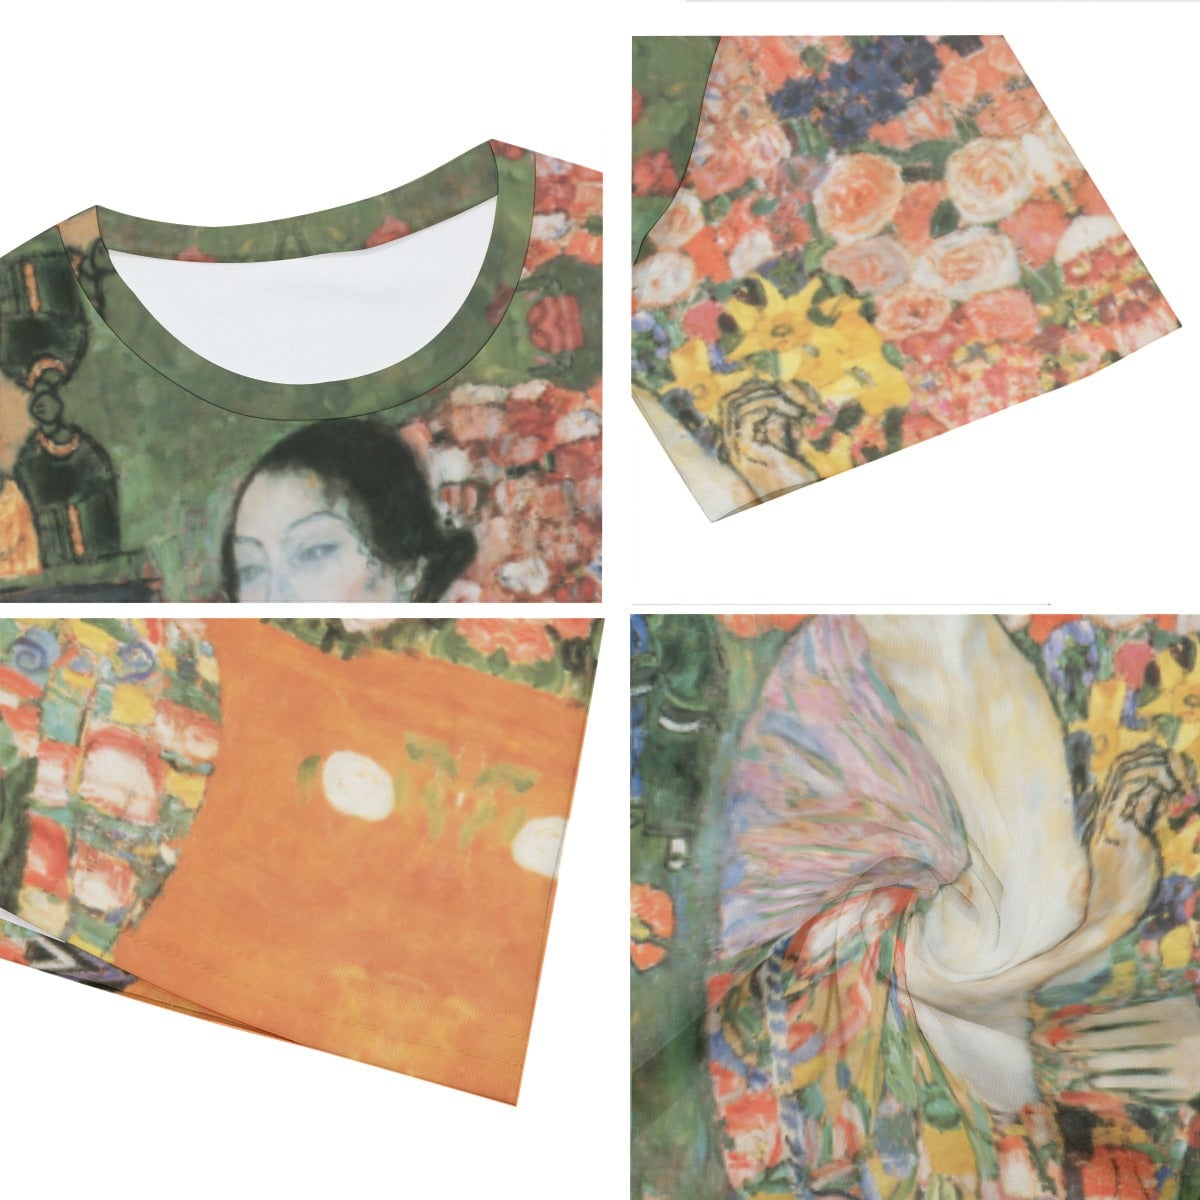 Gustav Klimt’s The Dancer Painting T-Shirt